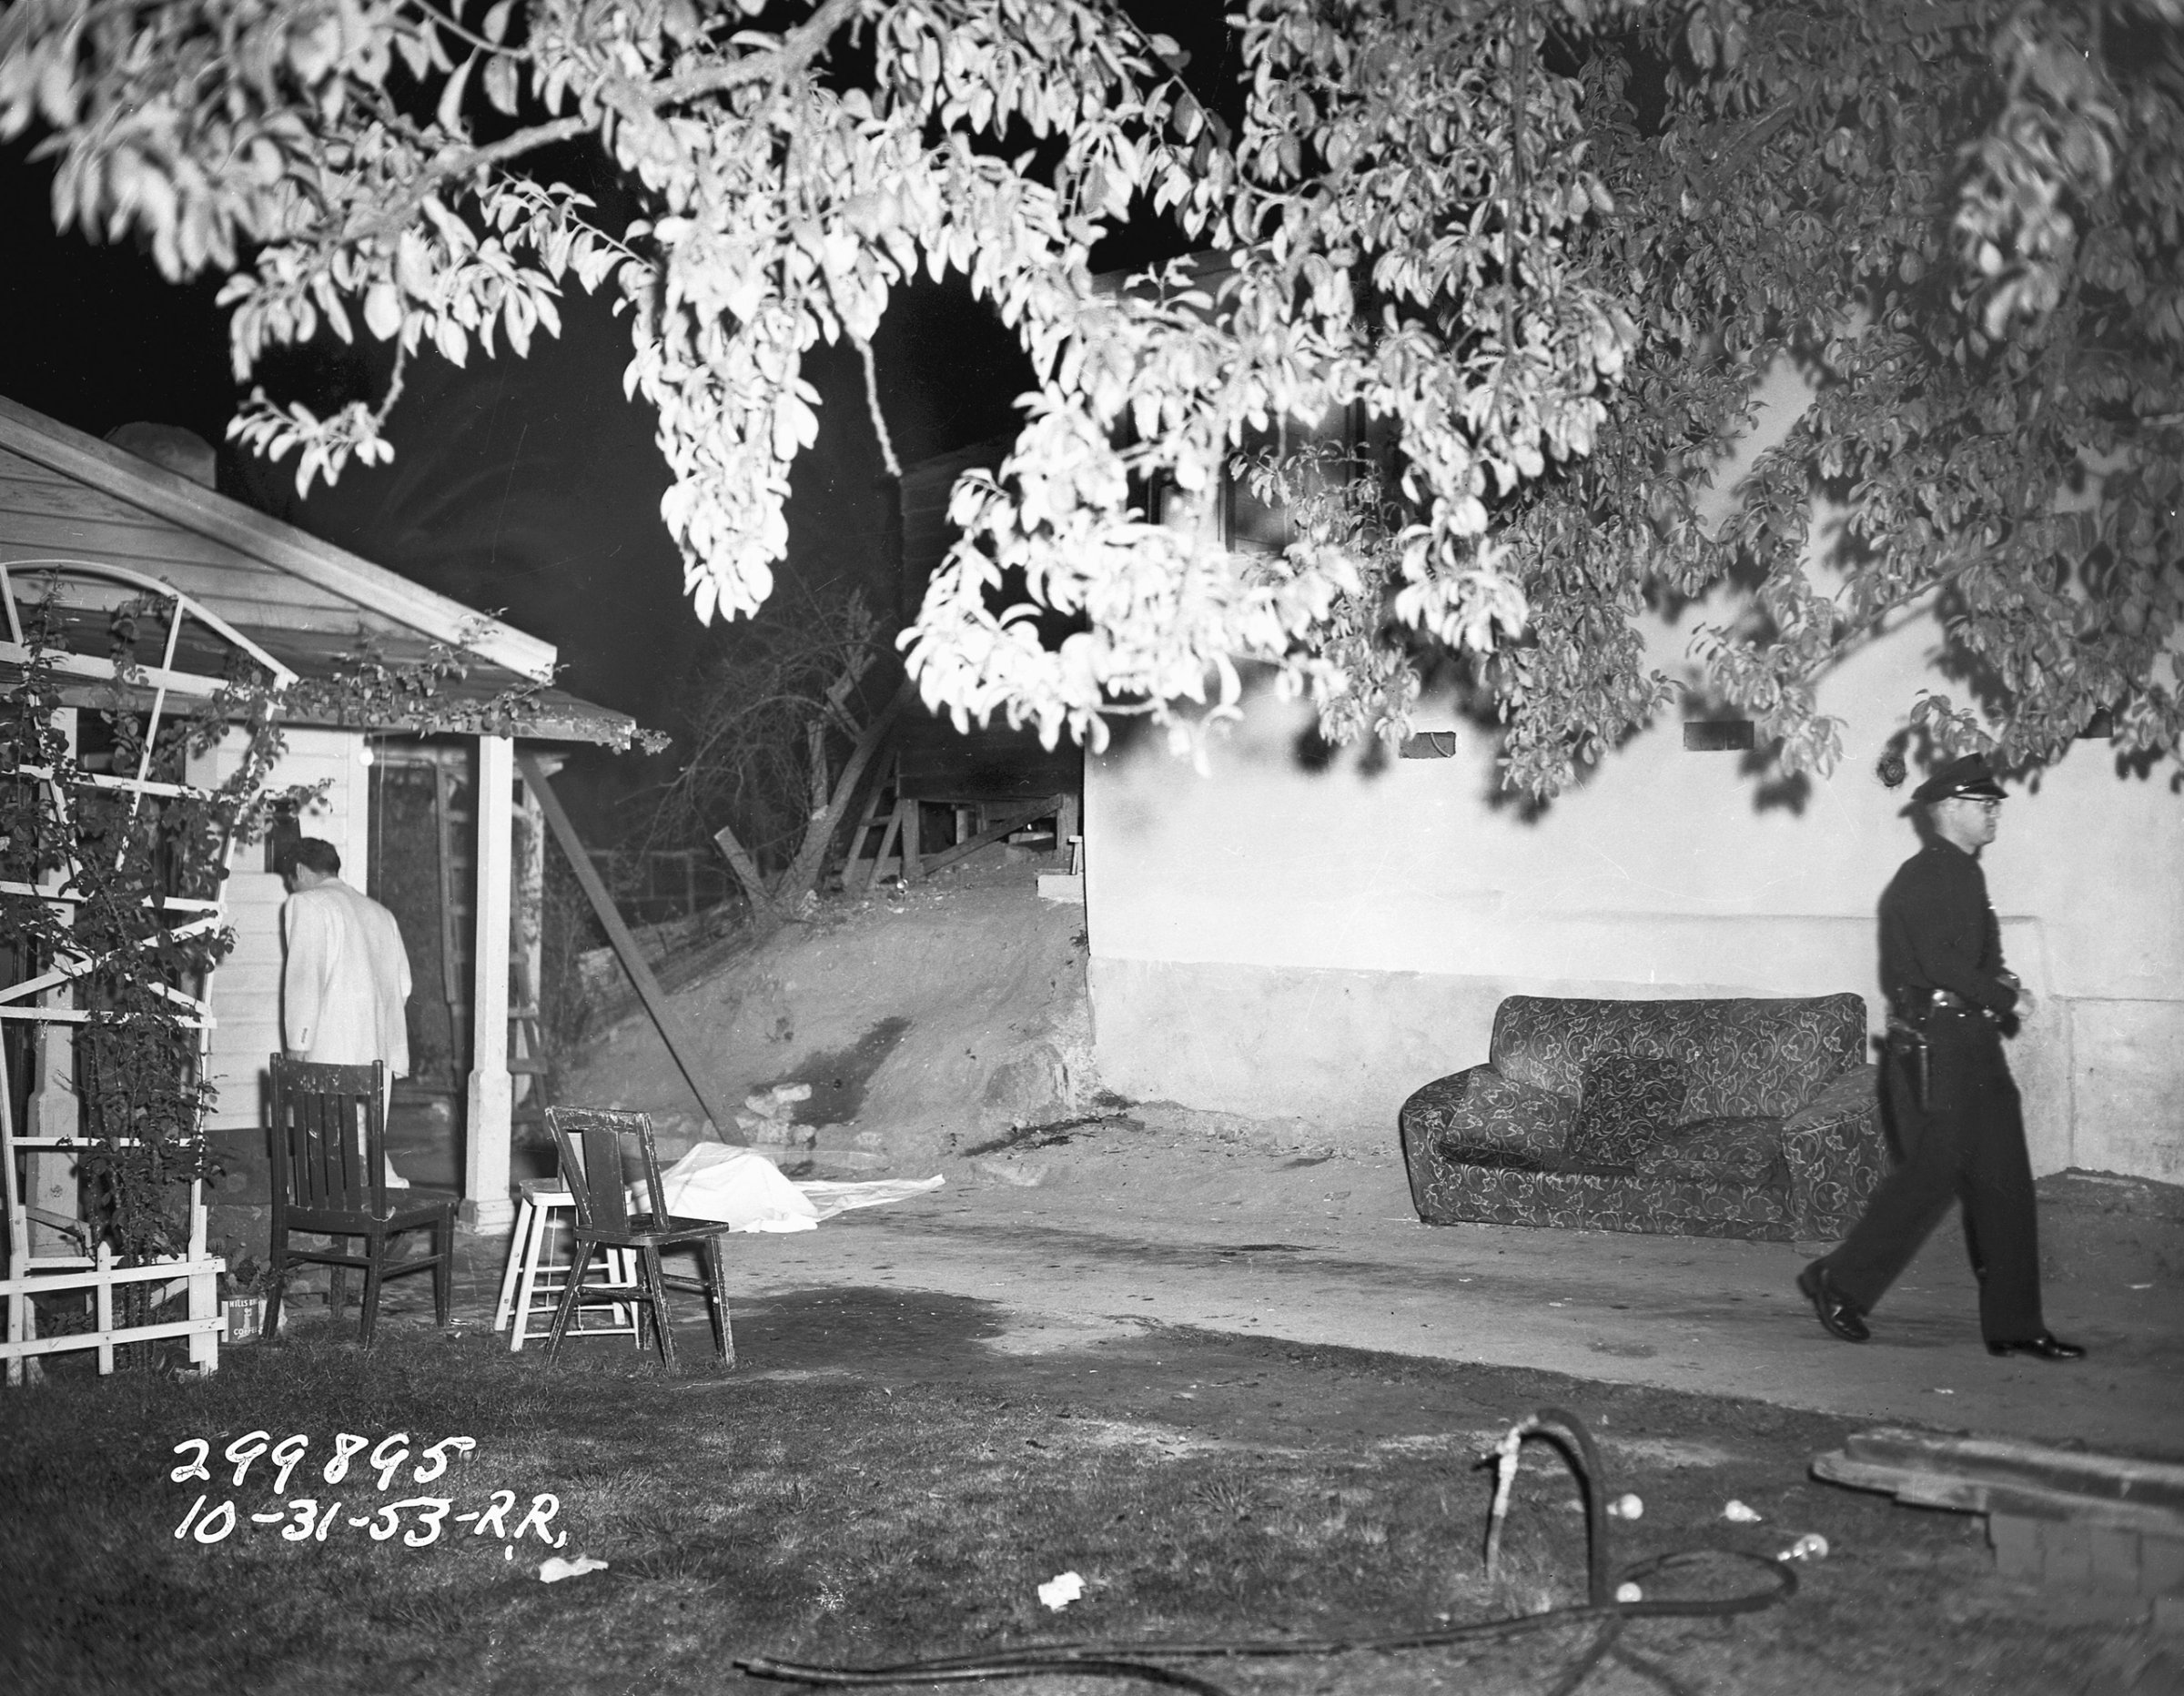 1953 LAPD crime scene photo.